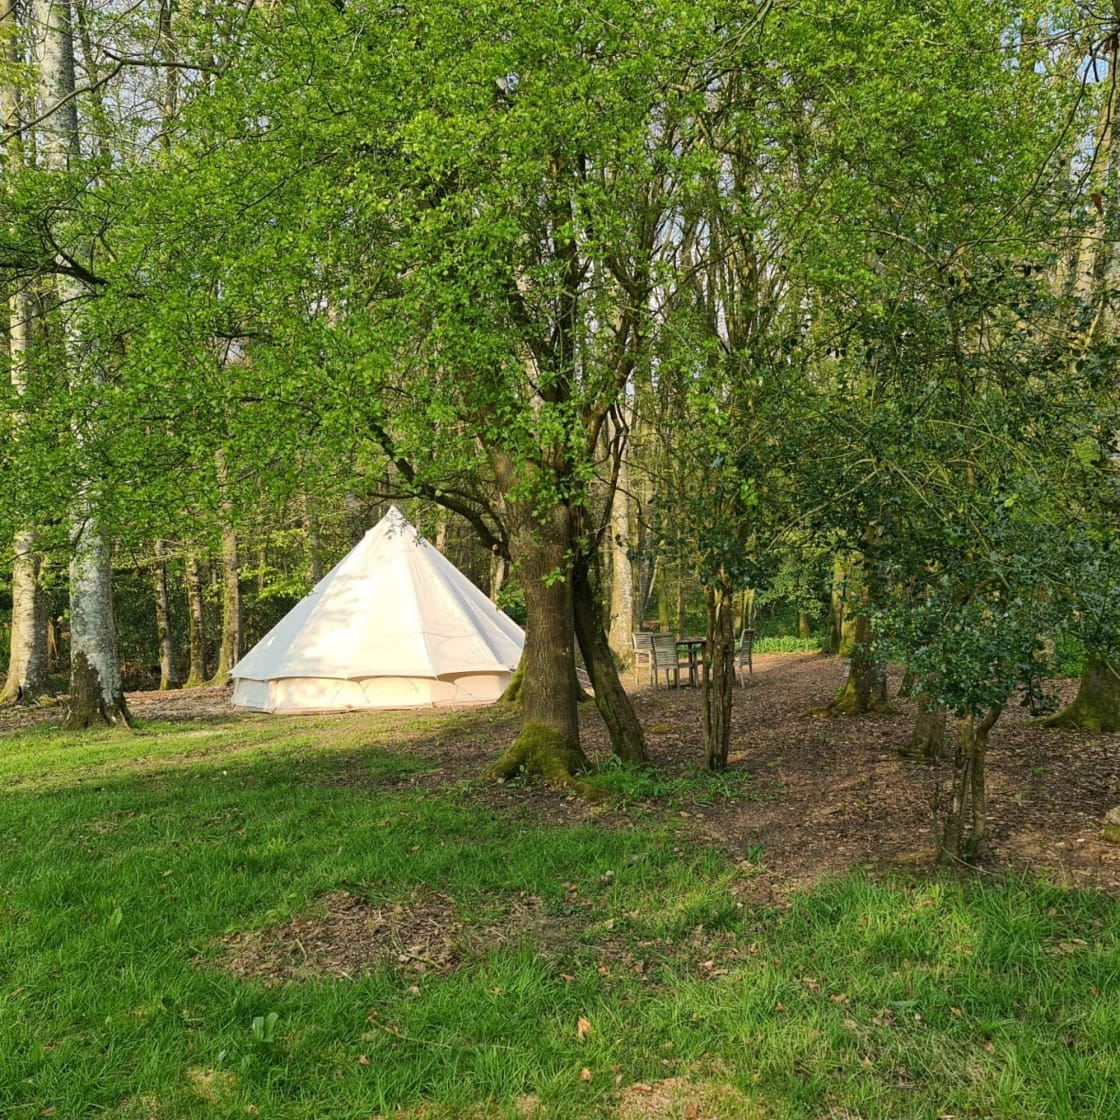 Wytch Wood Camping